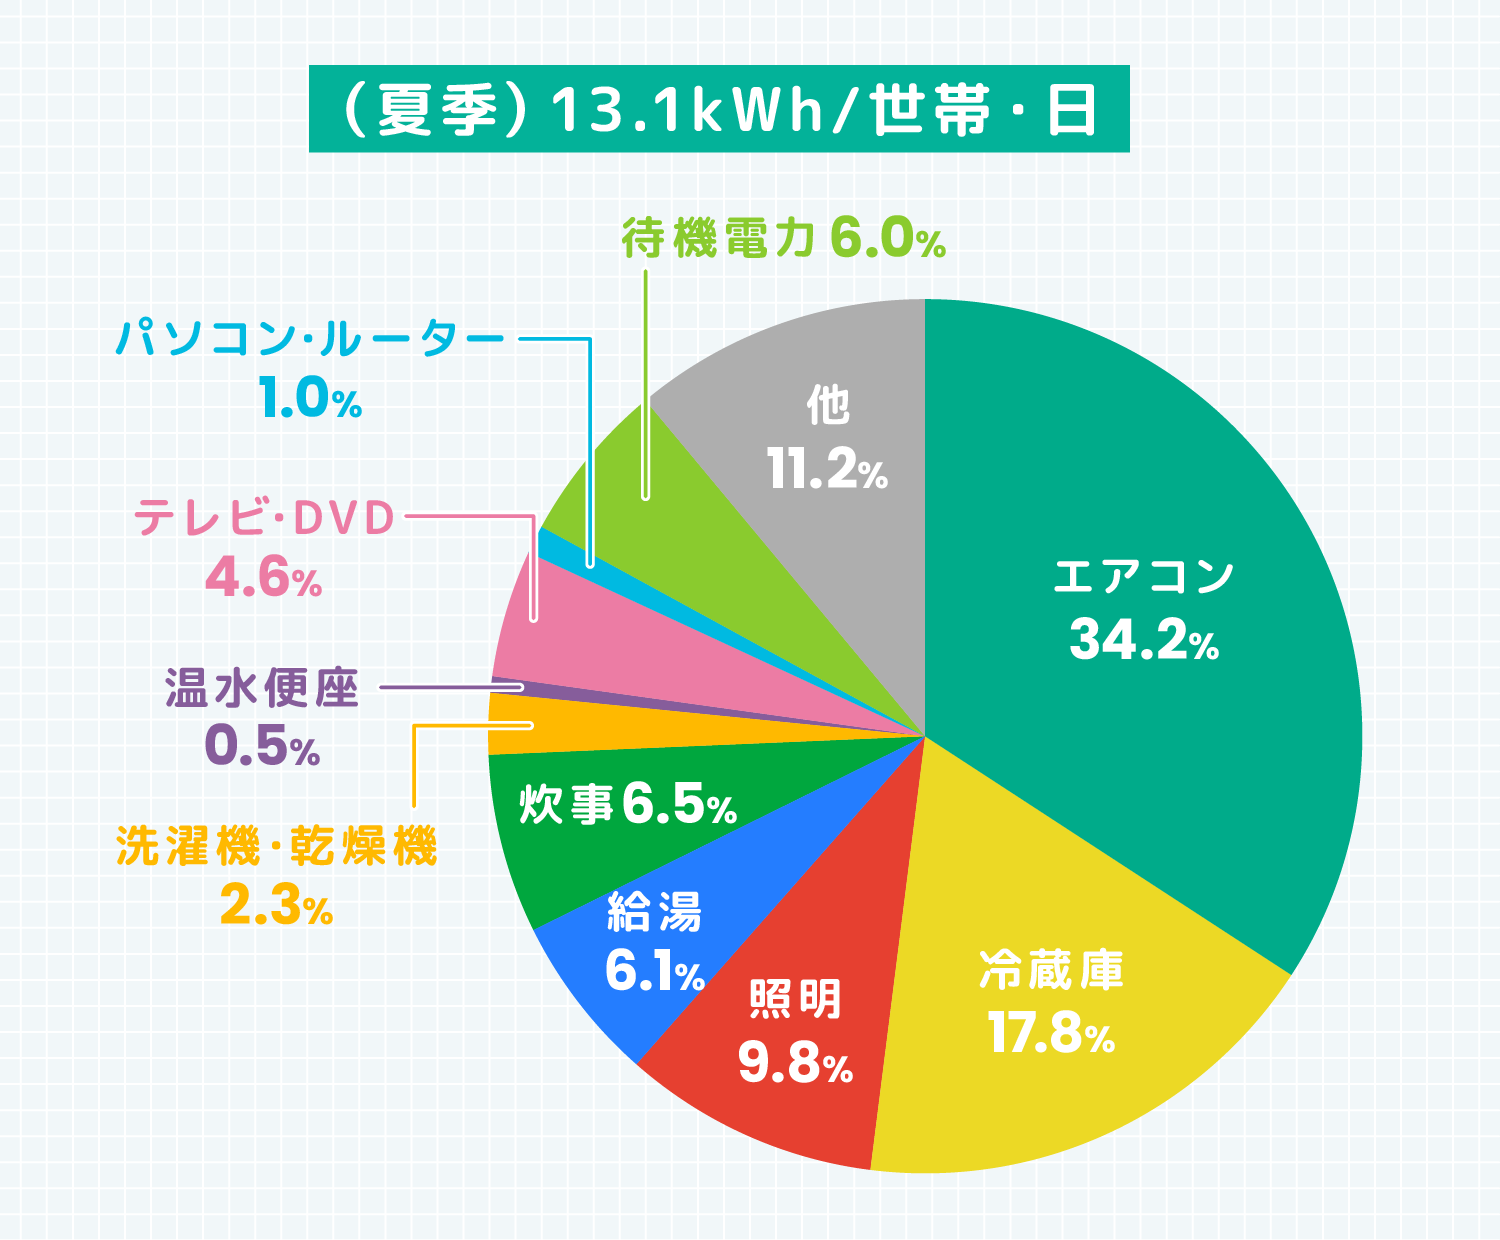 (夏季)13.1kWh/世帯・日 エアコン34.2％ 冷蔵庫17.8％ 照明9.8％ 給湯6.1％ 炊事6.5％ 洗濯機・乾燥機2.3％ 温水便座0.5％ テレビ・DVD4.6％ パソコン・ルーター1.0％ 待機電力6.0％ 他11.2％